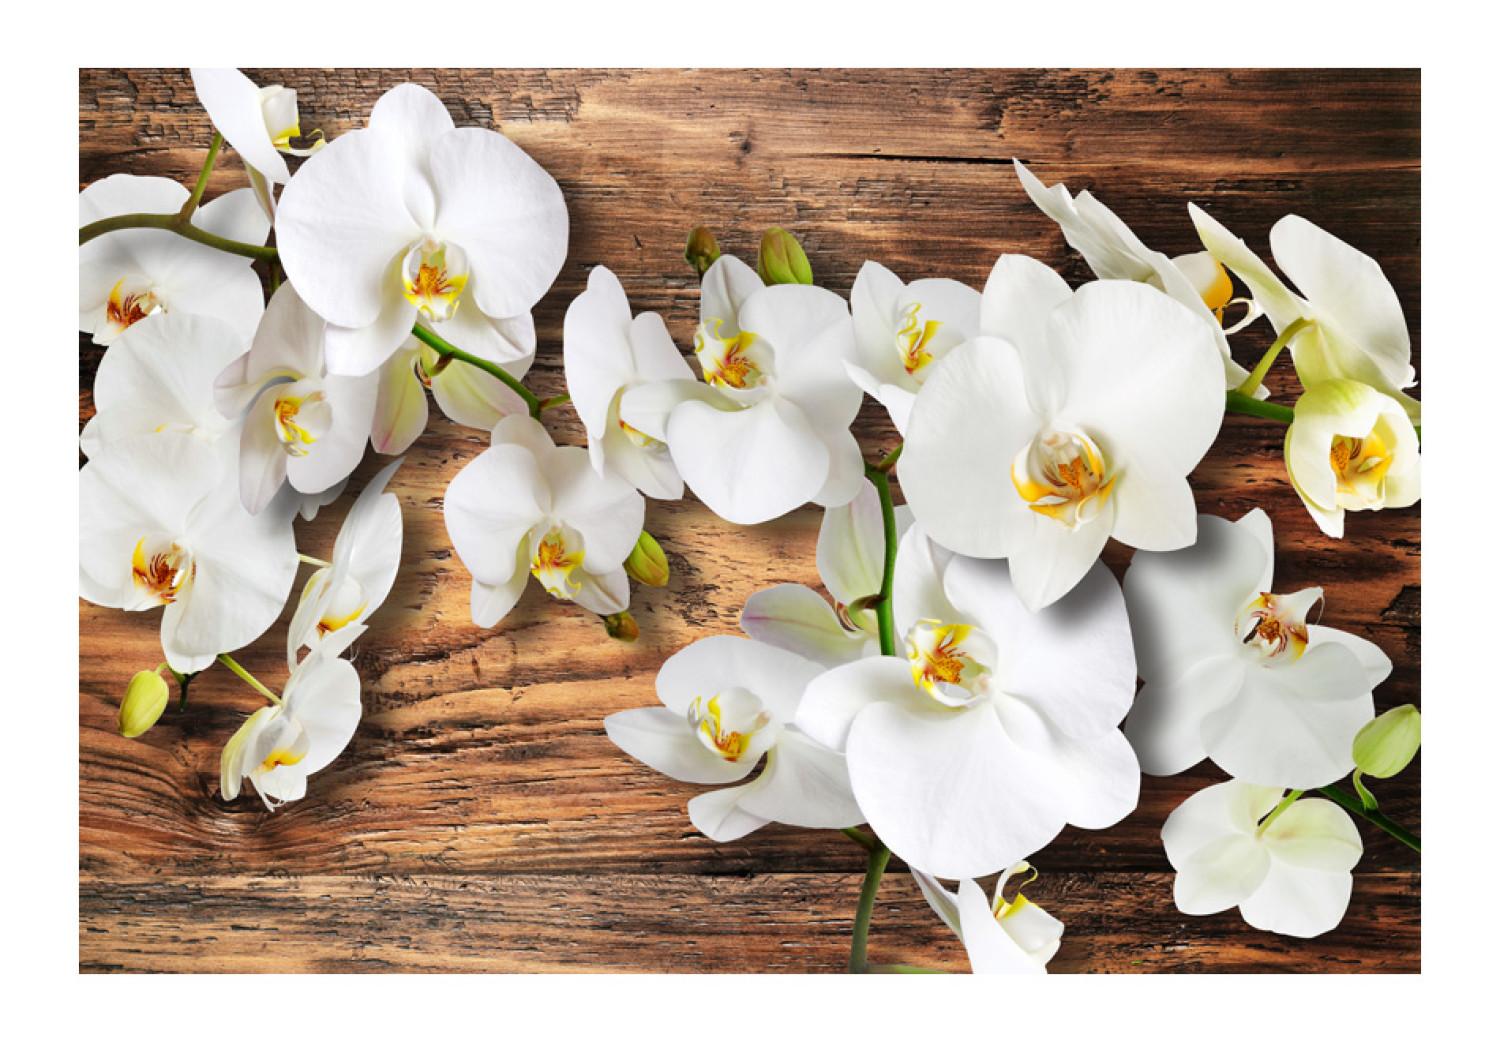 Fotomural a medida Composición vegetal con madera - orquídeas sobre madera